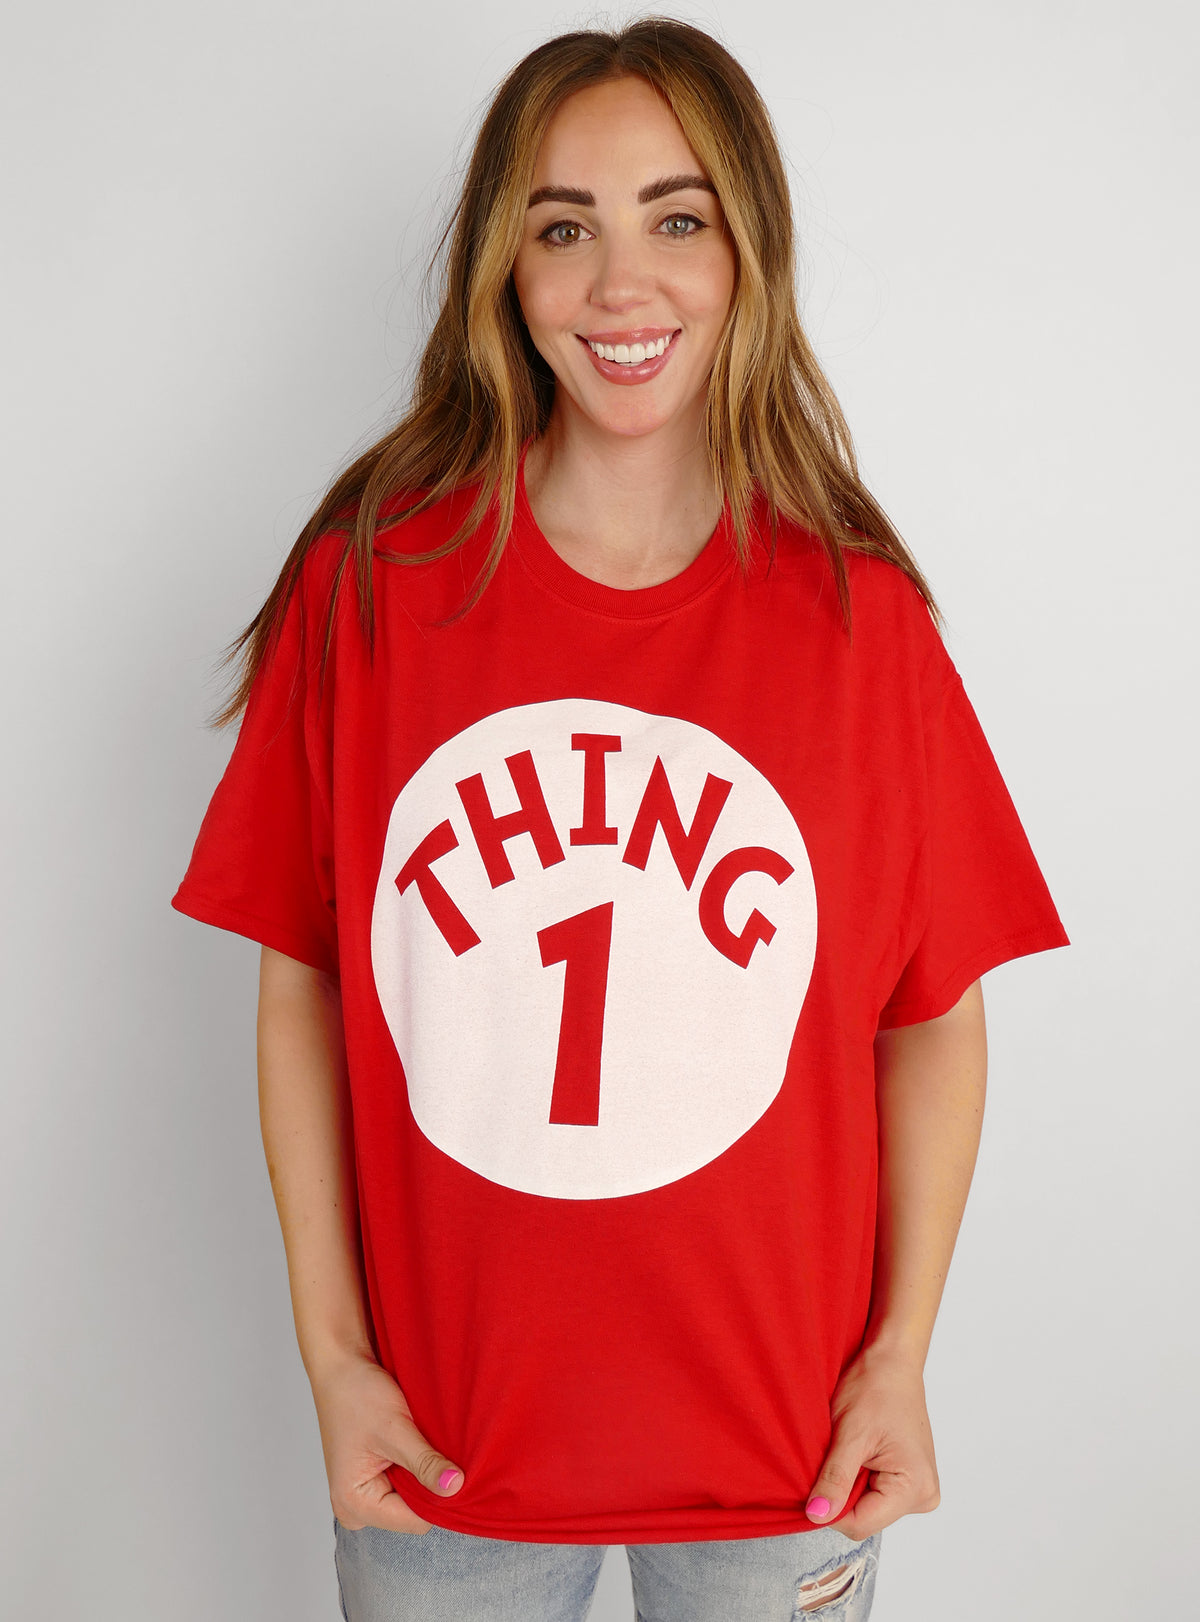 Thing 1 + Thing 2 Matching T-Shirt Set